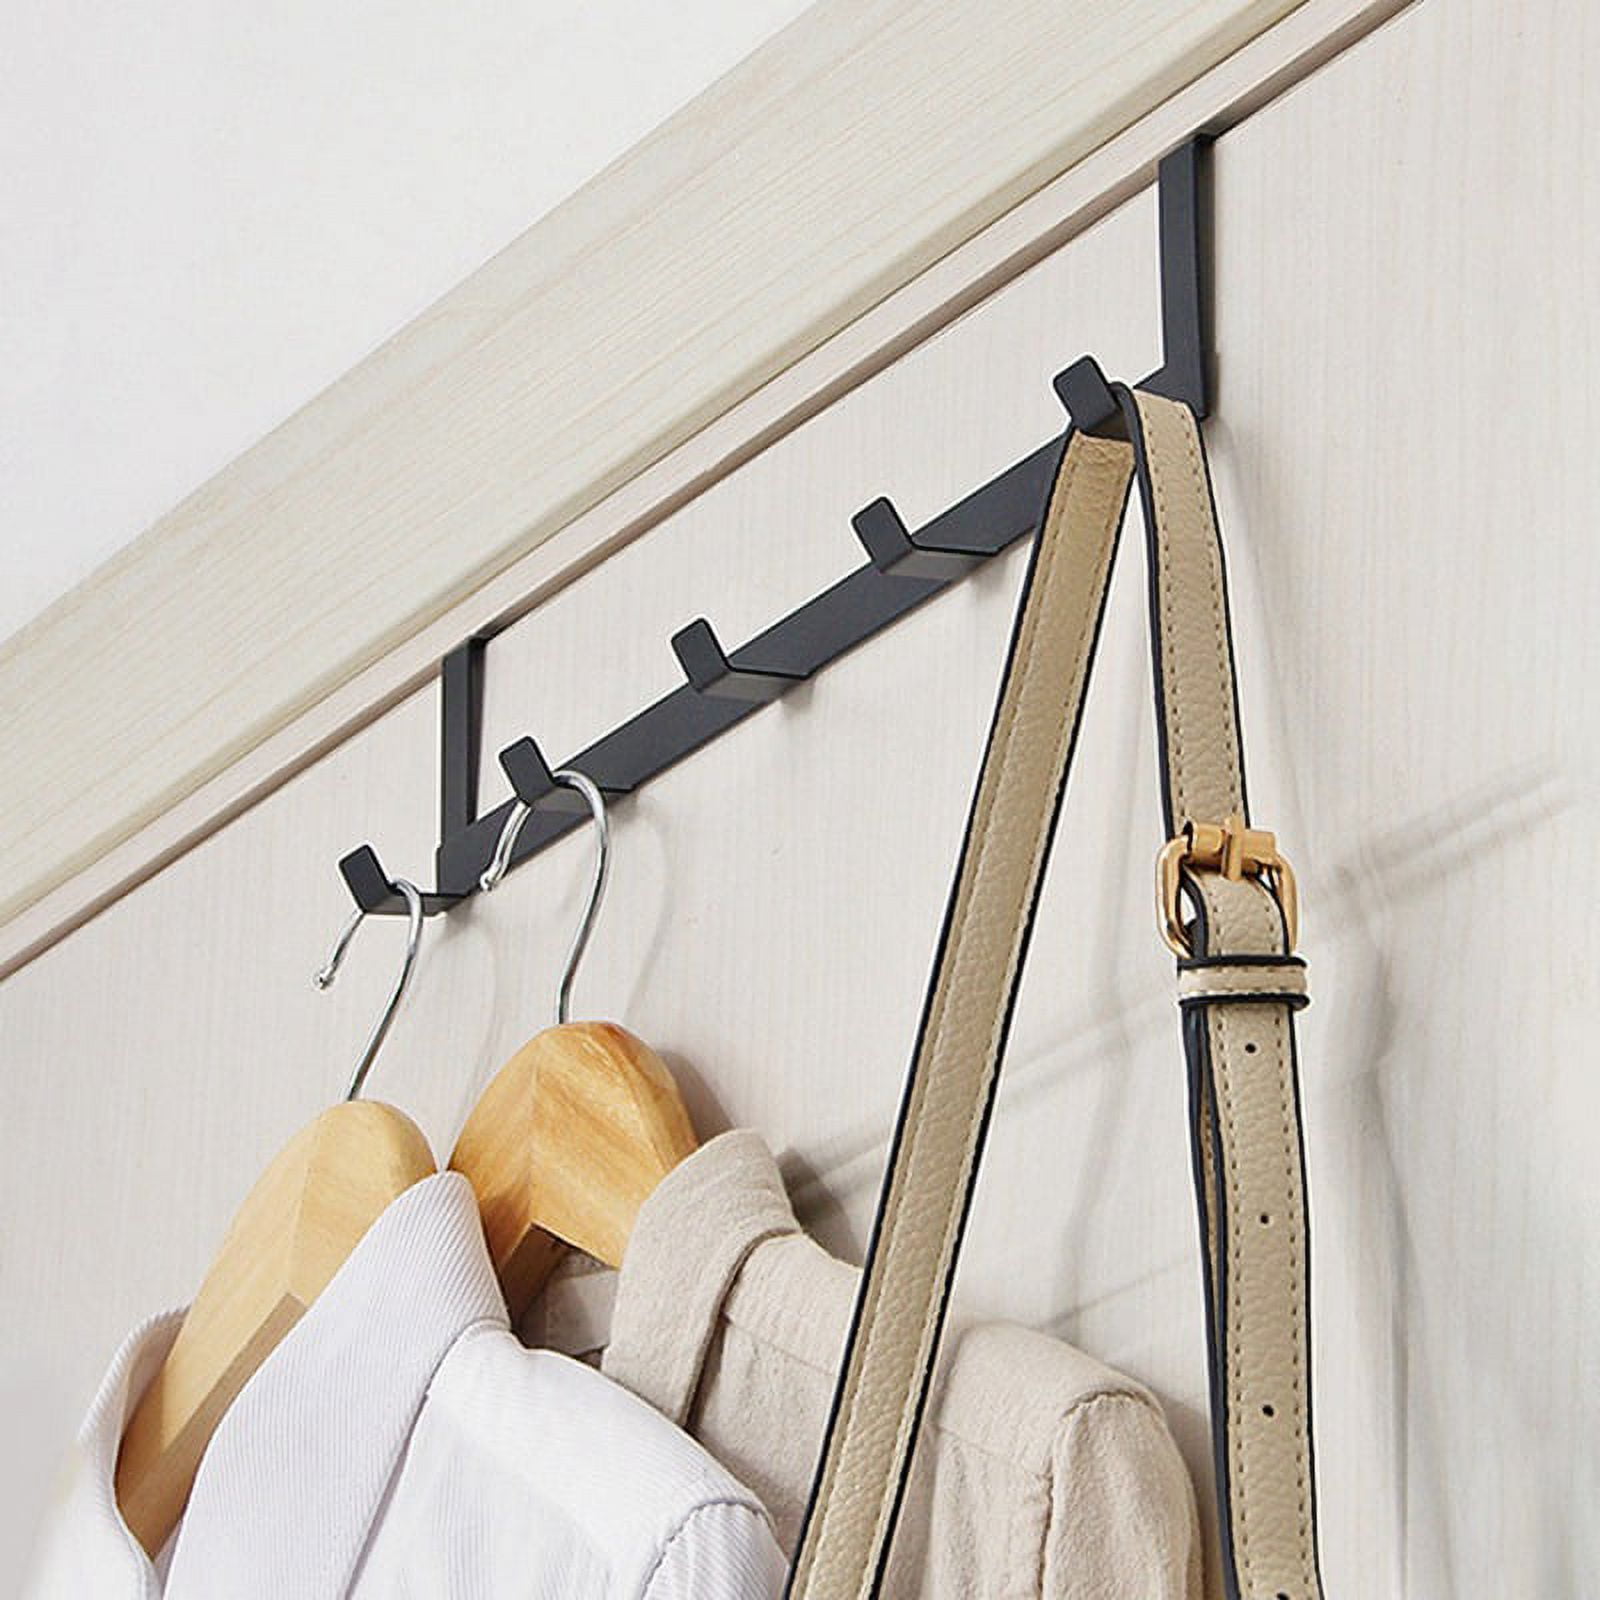 DOCAT Door Hanger for Cloth Hanging Over The Door Hook with 12 Portable  Hooks Heavy Duty Cloth Hanger Rack for Hanging Clothes (12 Hooks Hanger)